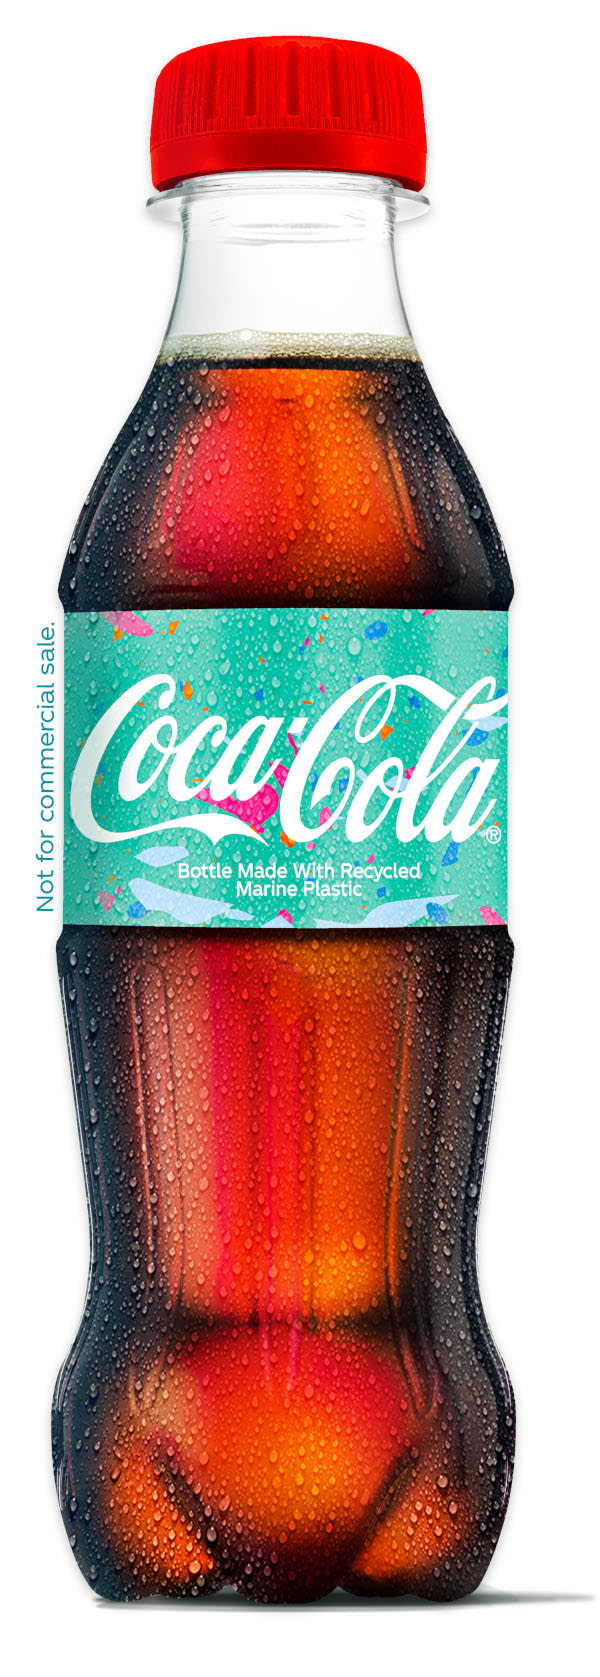 Die neue "Marine Bottle" von Coca Cola, hergestellt mit einer neuen Technologie 